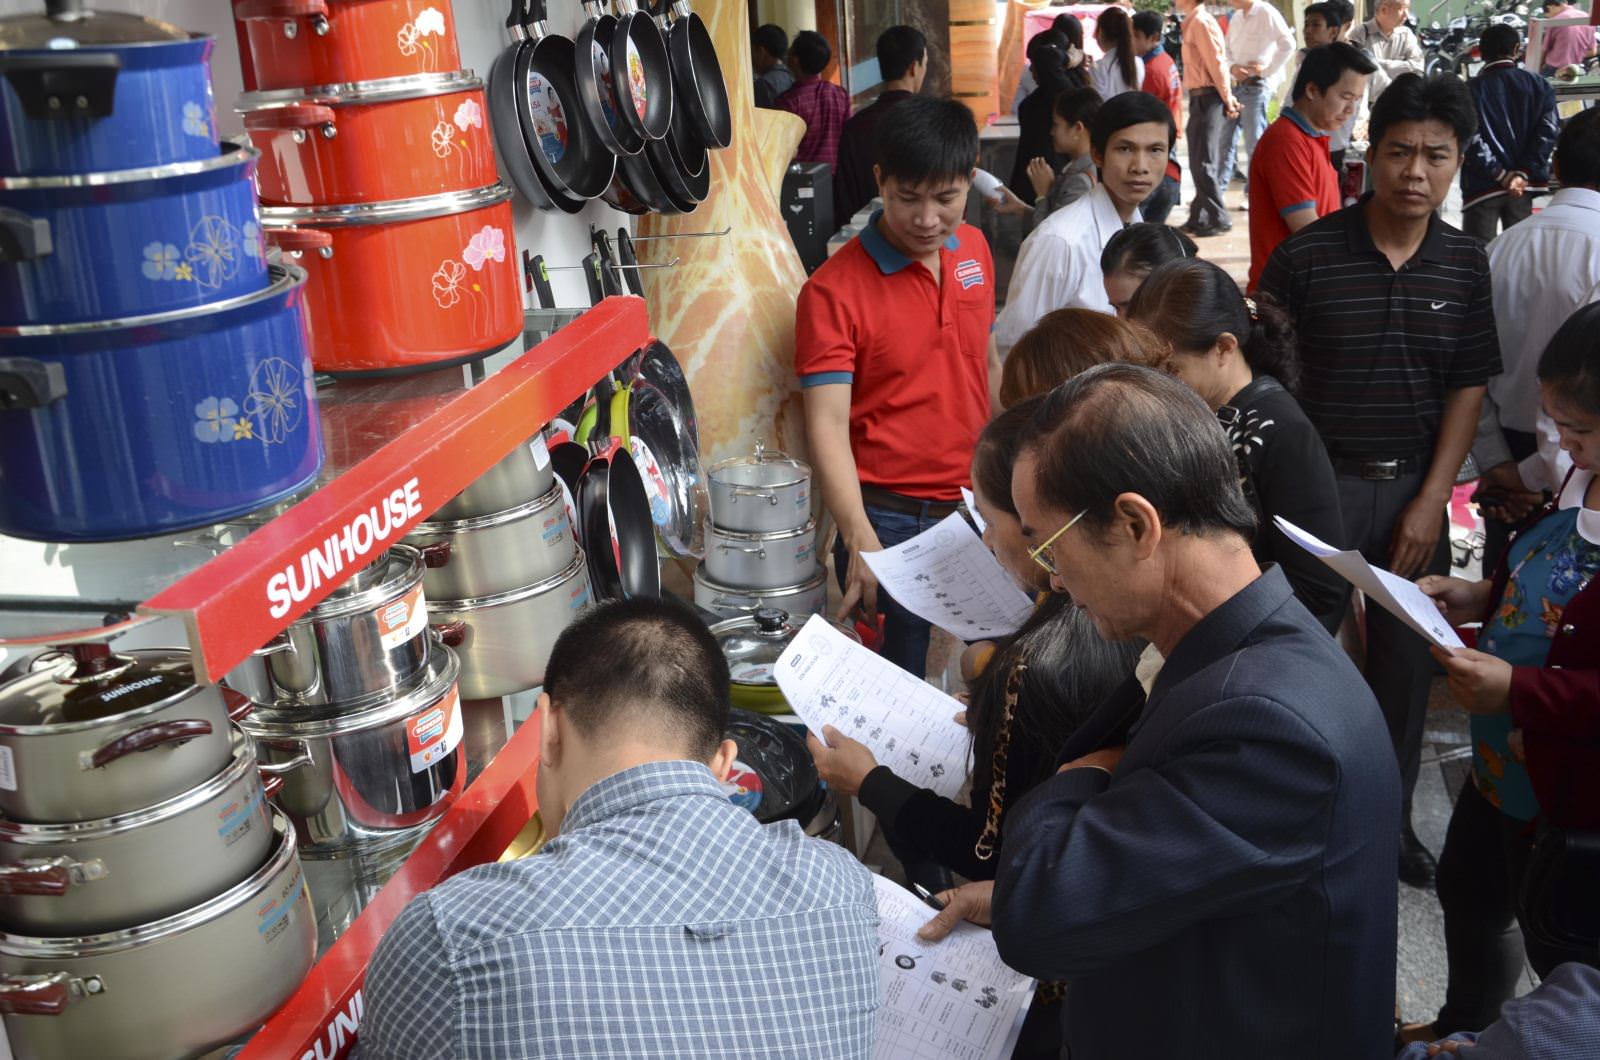 Hội nghị khách hàng Sunhouse tại Nam Định 2014: Chung một con đường – Hướng một tương lai 6